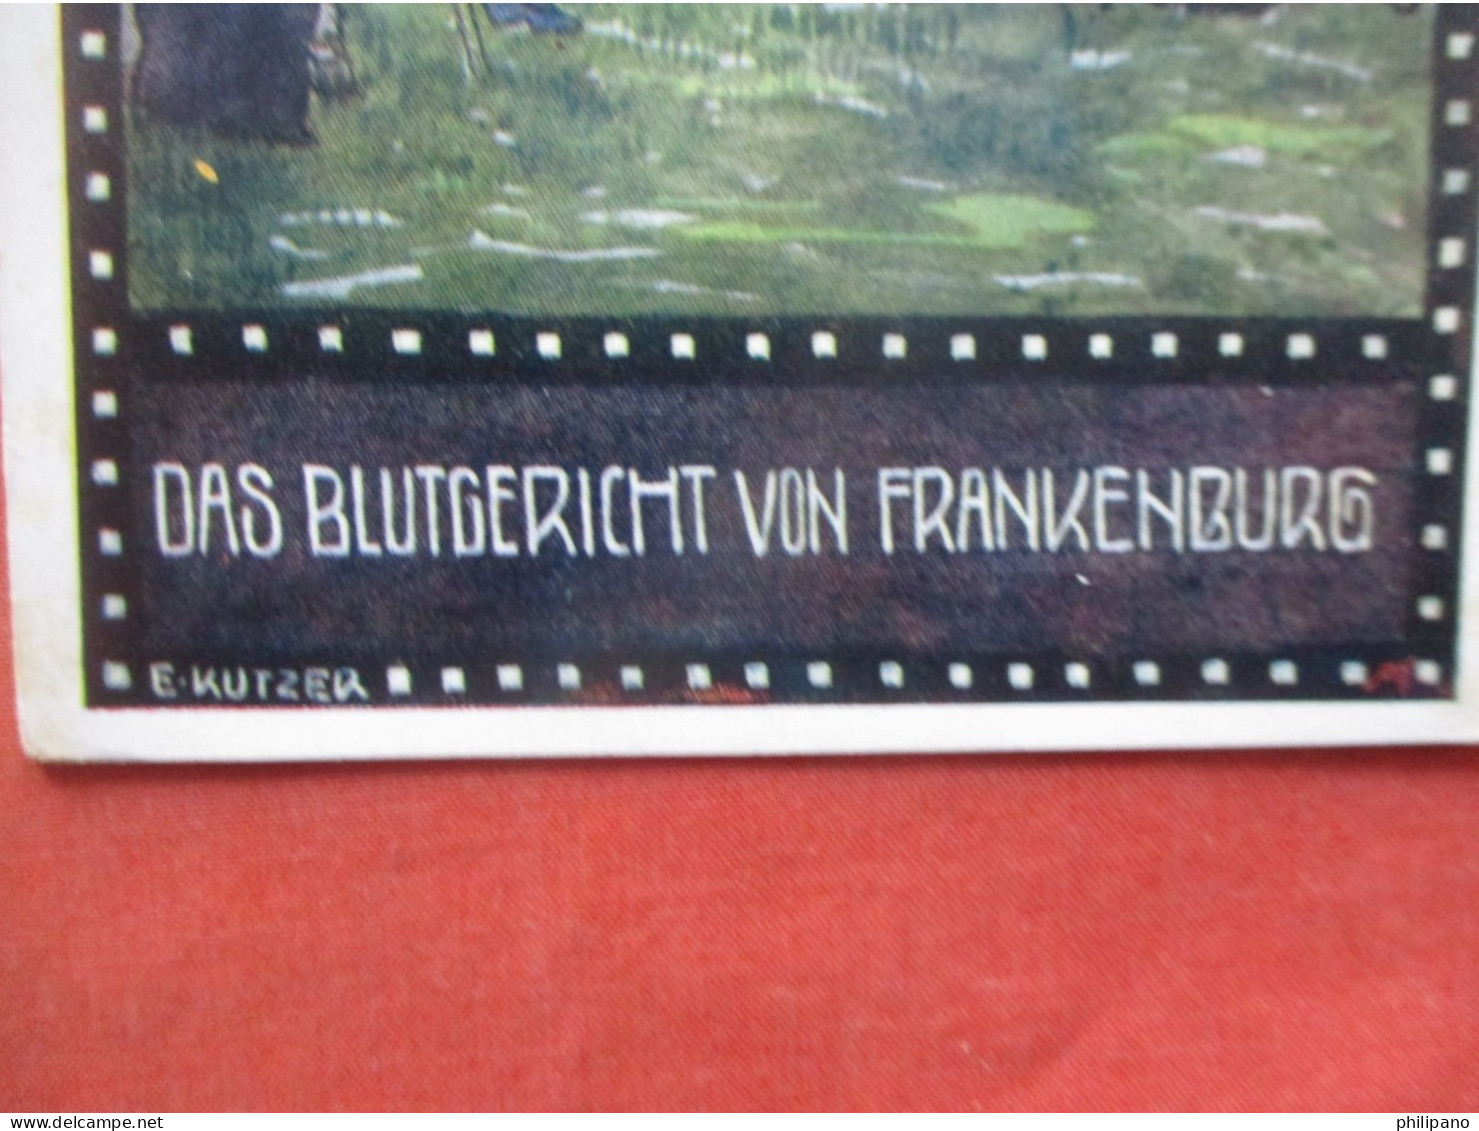 Das Blutgericht Von Frankenburg   Signed > Kutzer, Ernst    Ref 6184 - Kutzer, Ernst